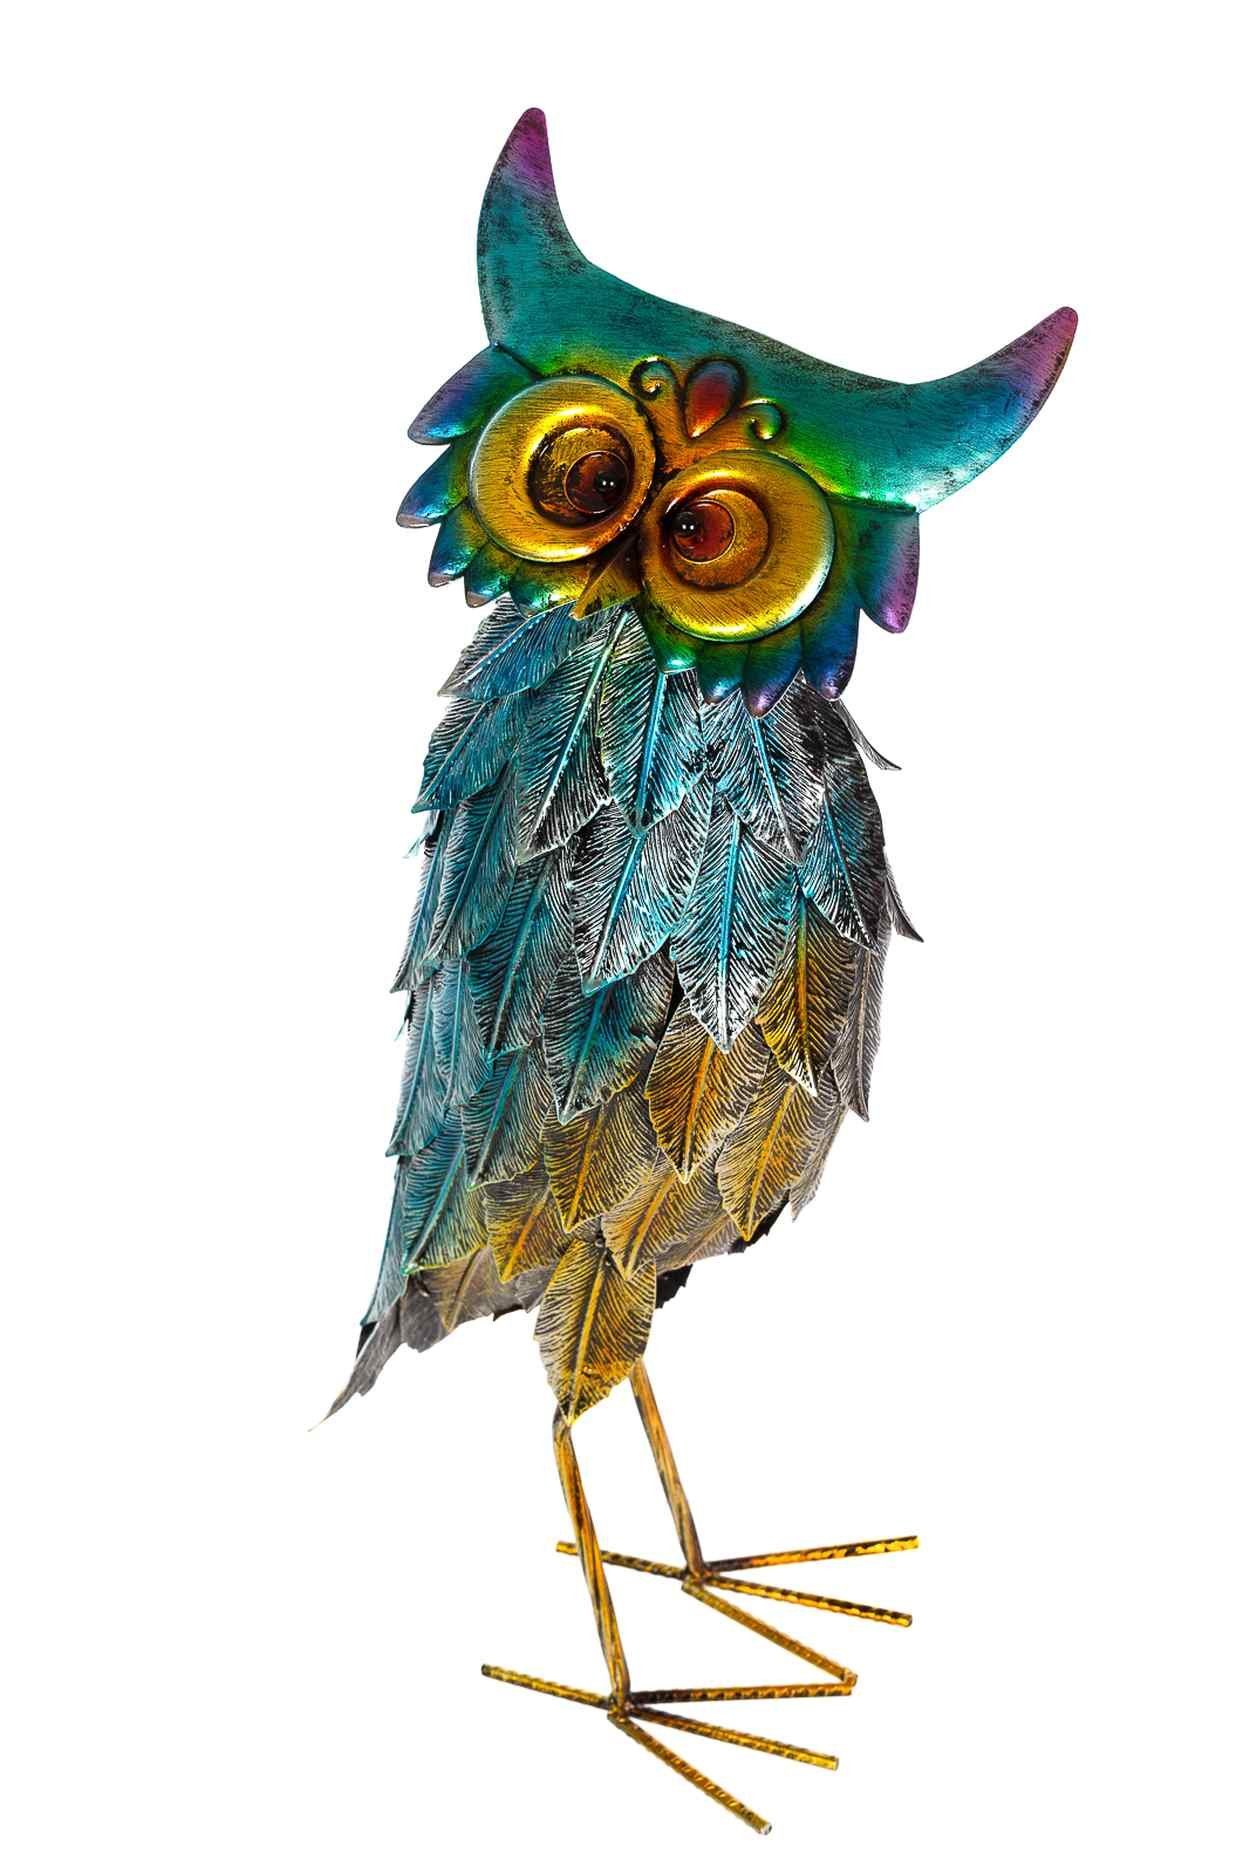 BIRENDY Dekofigur Riesiges oder WG Gartenfigur Figurenpaar Enten schönes Dekofigur Metall Eulen